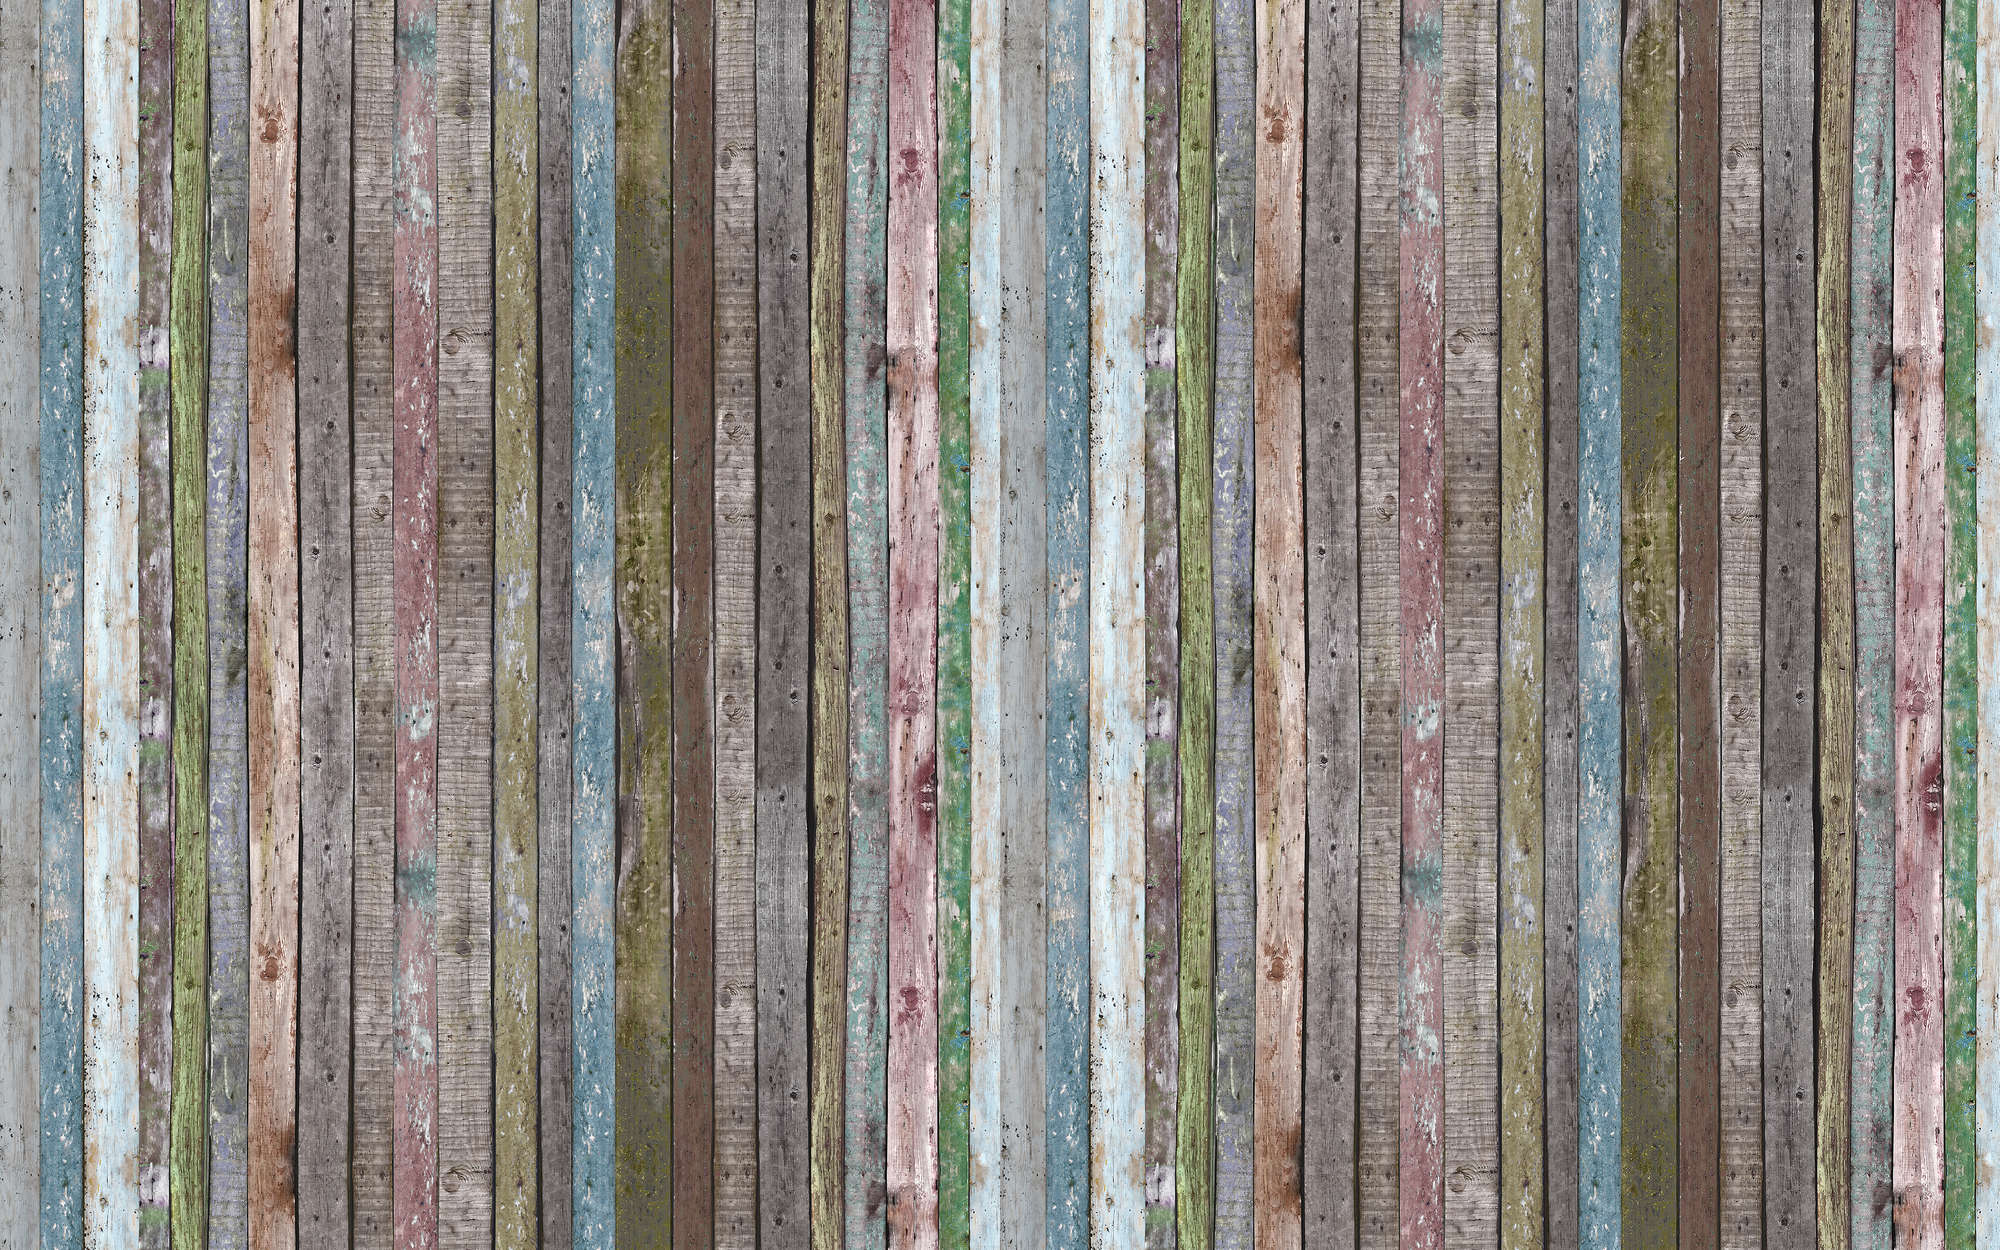             Wooden Striped Beams Wallpaper - Premium Smooth Non-woven
        